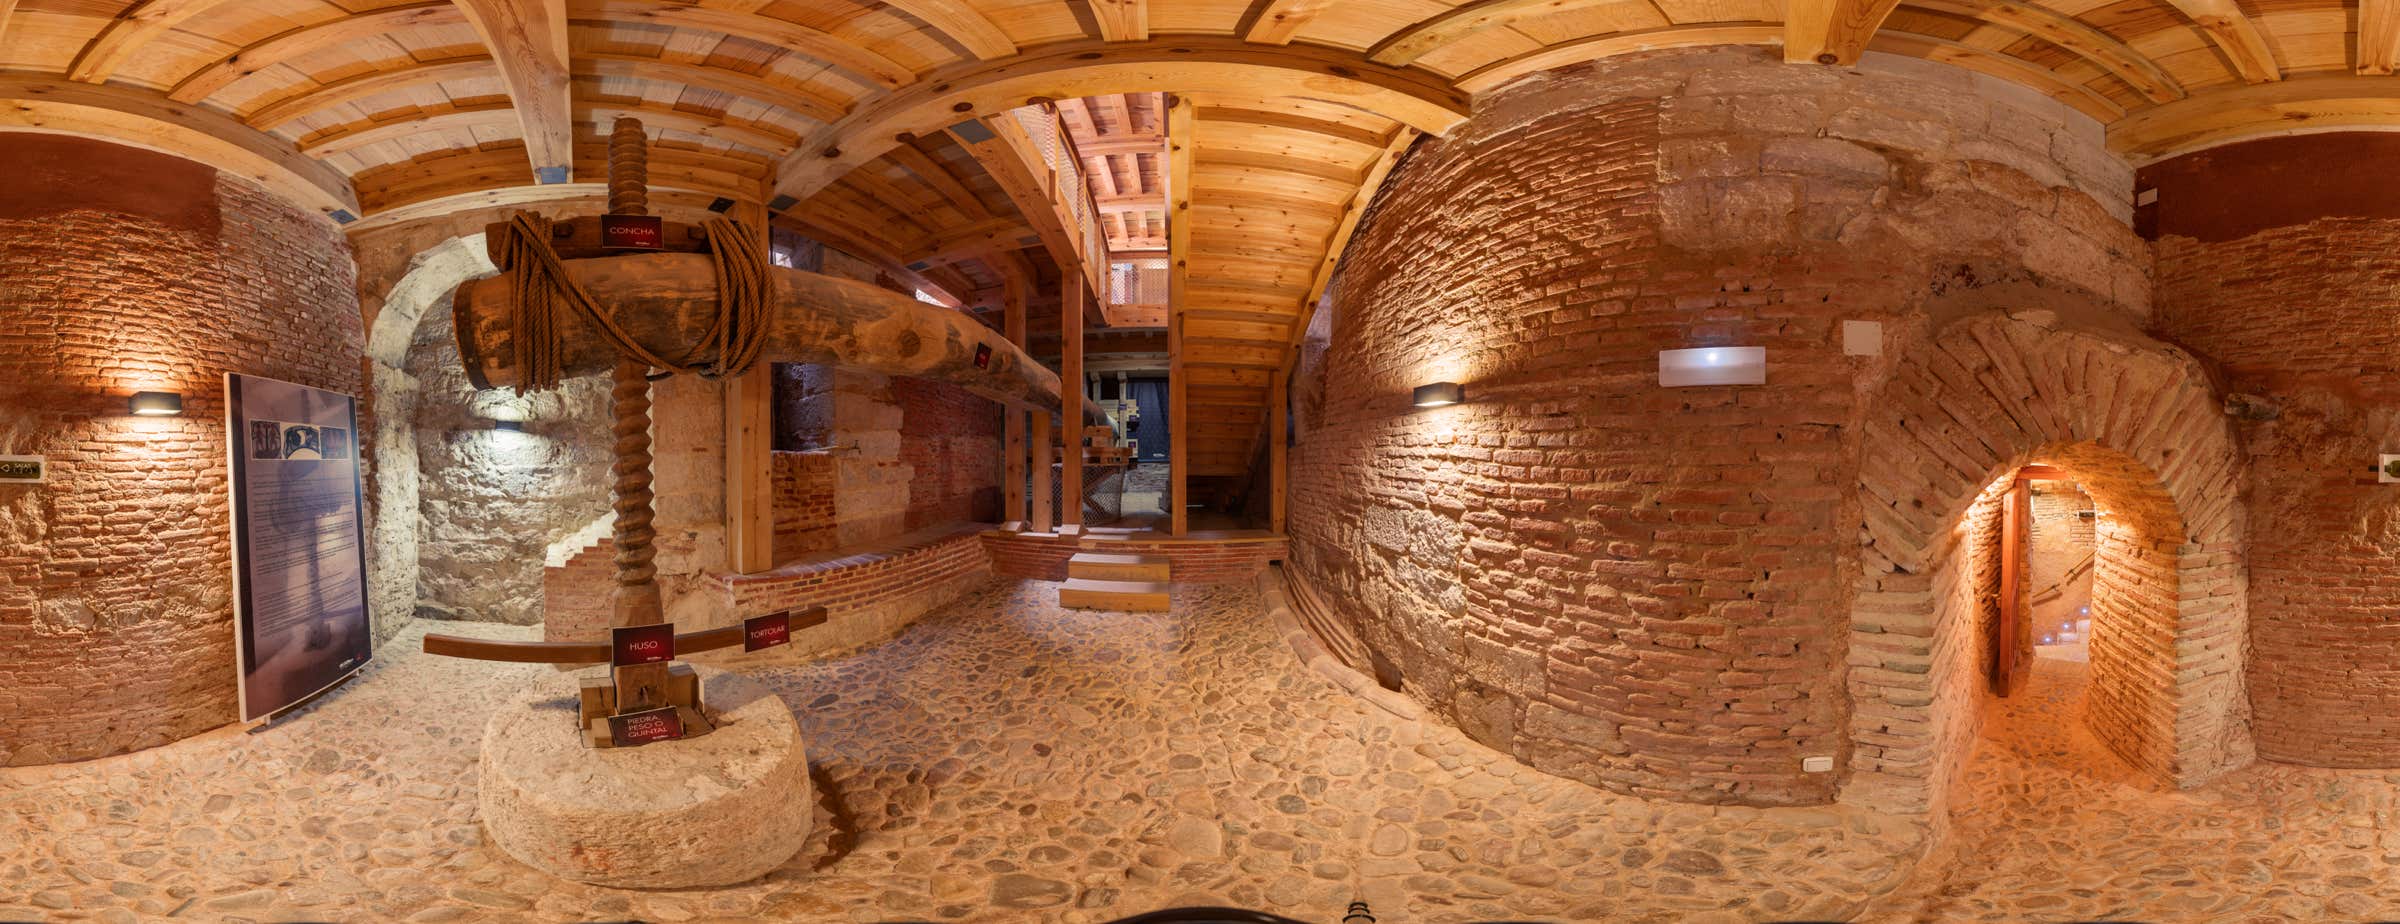 Πανοραμική εικόνα 360° στο εσωτερικό του μουσείου που δείχνει ένα μεγάλο ξύλινο πιεστήριο που χρησιμοποιείται για την εξαγωγή του χυμού από τα σταφύλια.